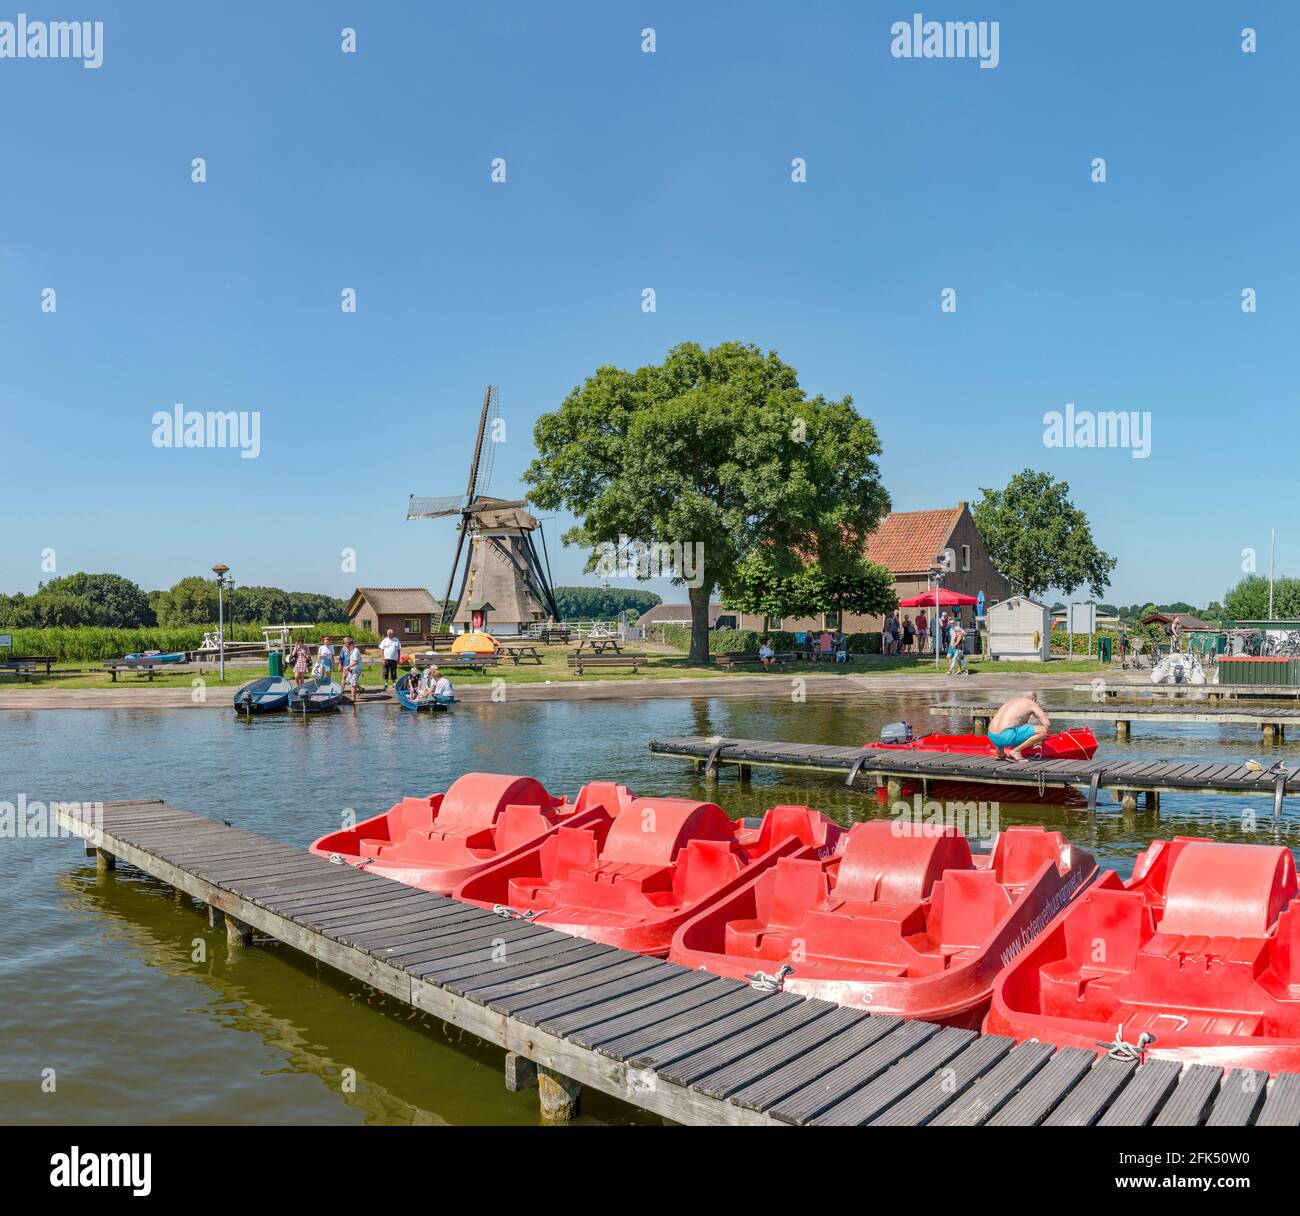 Moulin de Drainige appelé Eendrachtsmolen et location de bateaux près du lac Rotte Meren *** Légende locale *** Zevenhuizen, Zuid-Holland, pays-Bas, Winwm Banque D'Images